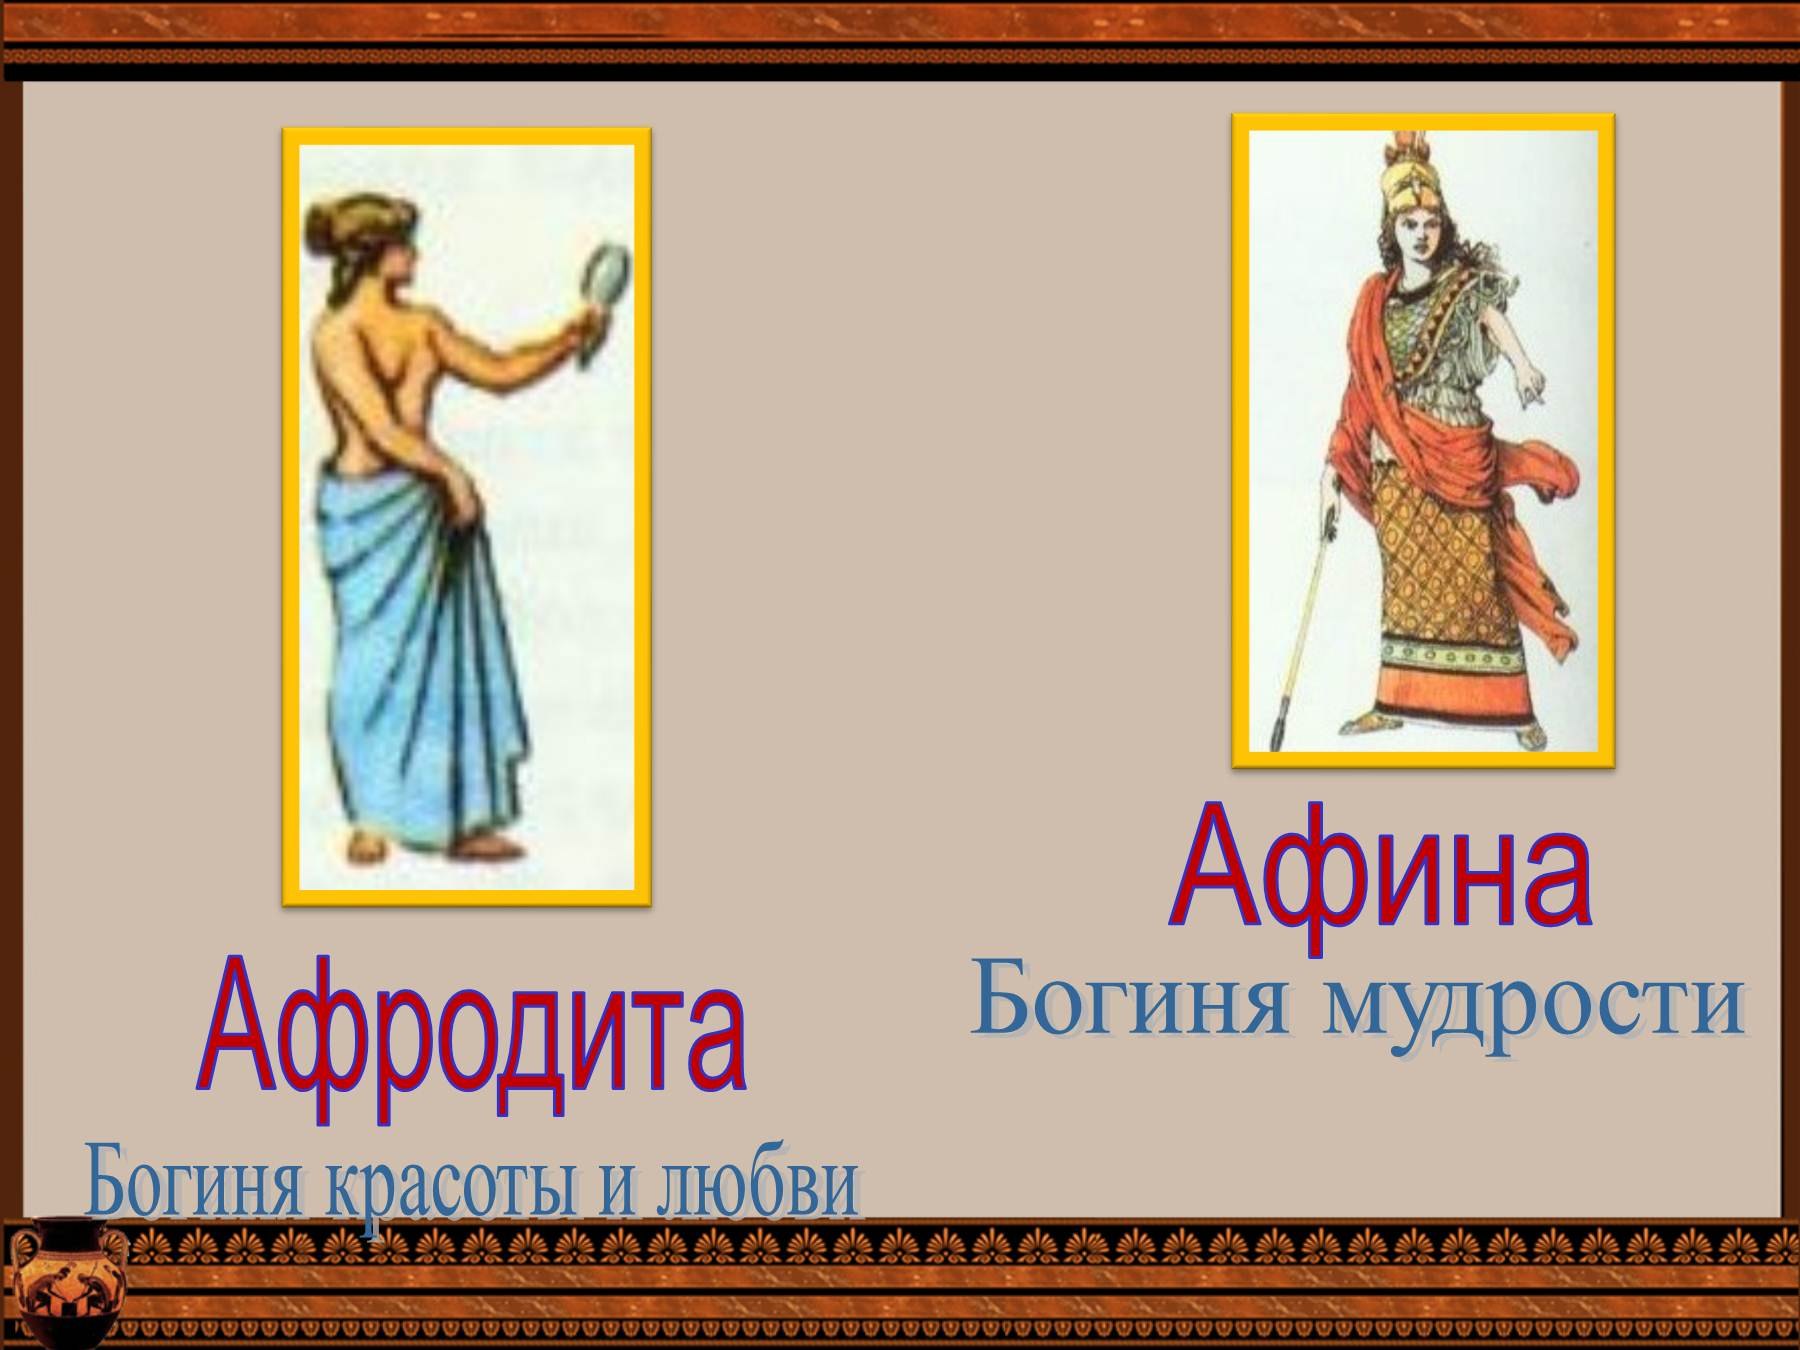 Афродита богиня мудрости